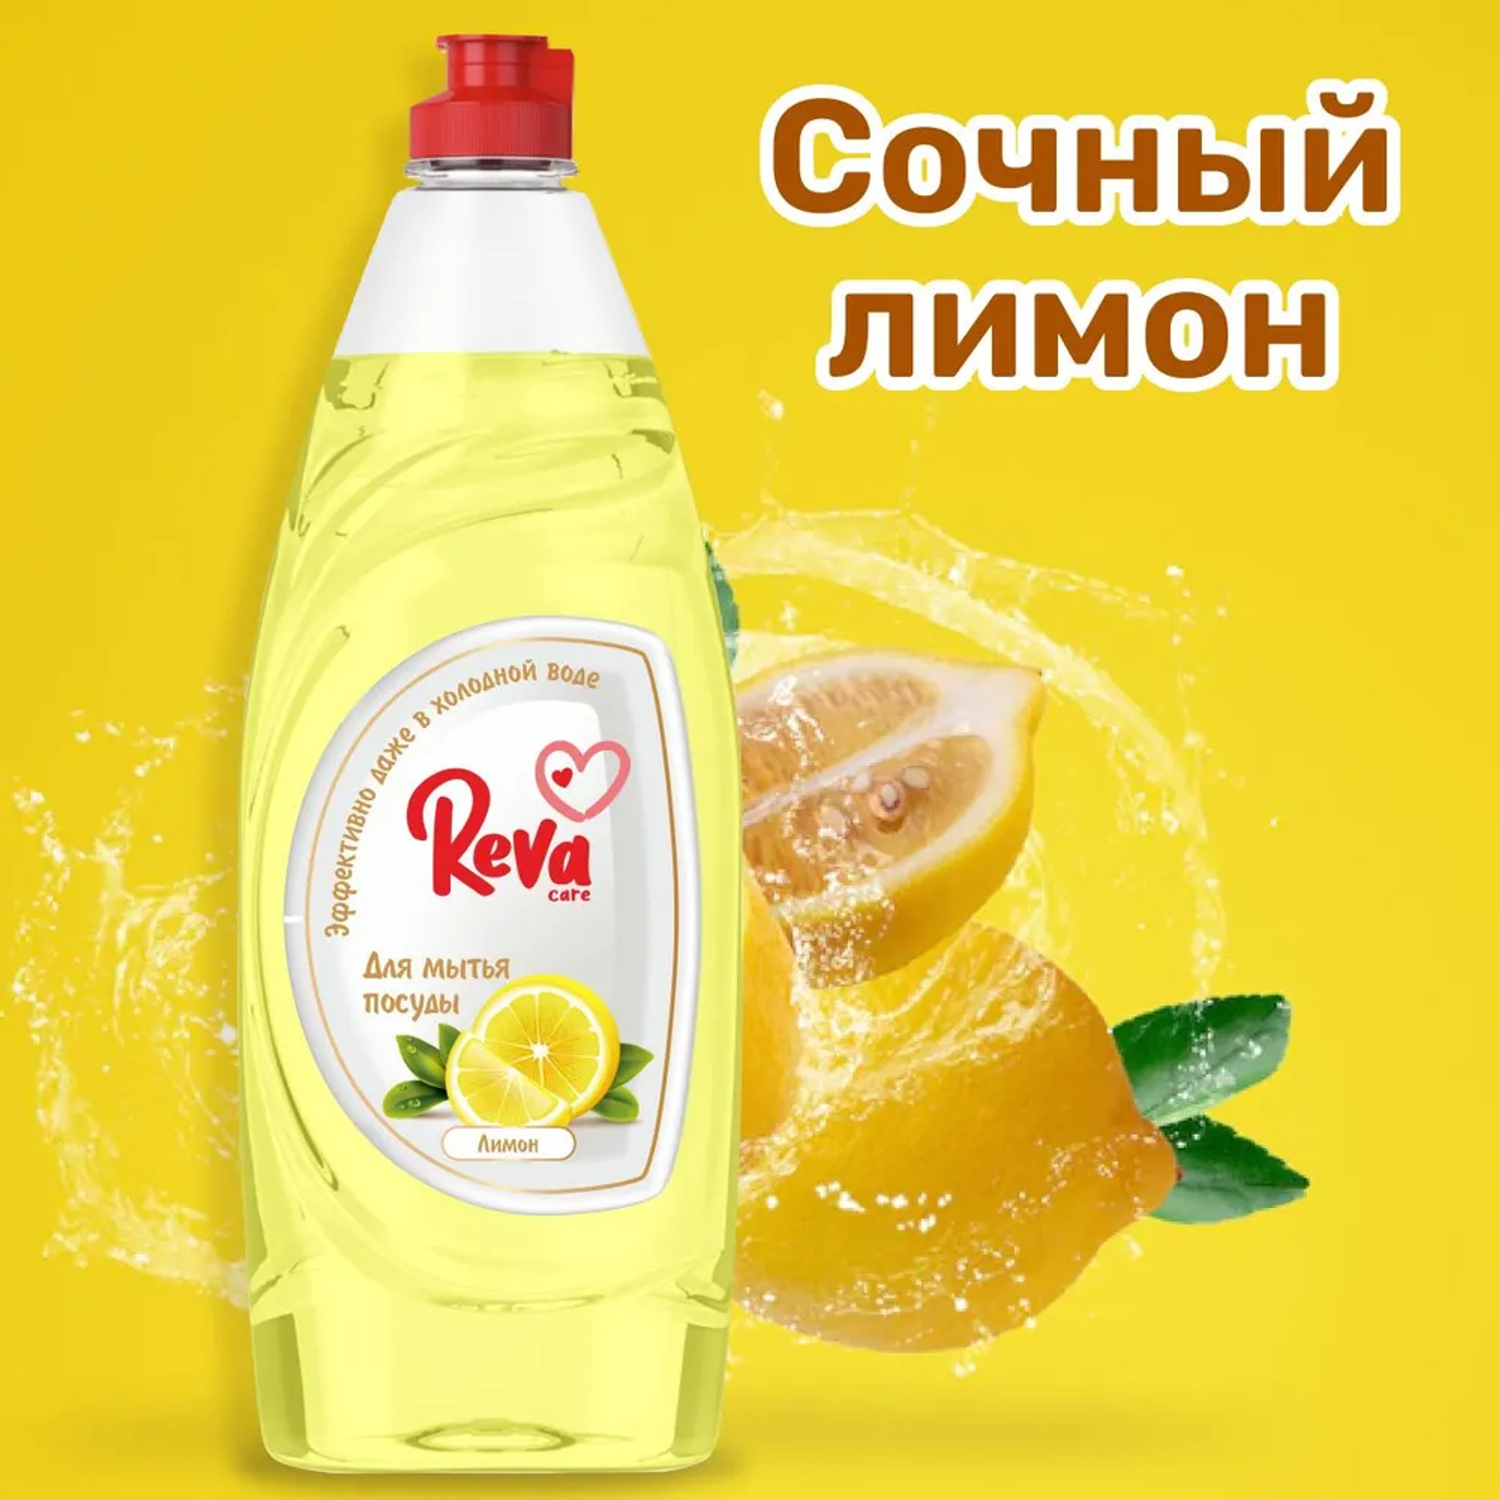 Средство для мытья посуды Reva Care Dishwash с ароматом Лимона 2 упаковки по 650 мл - фото 3